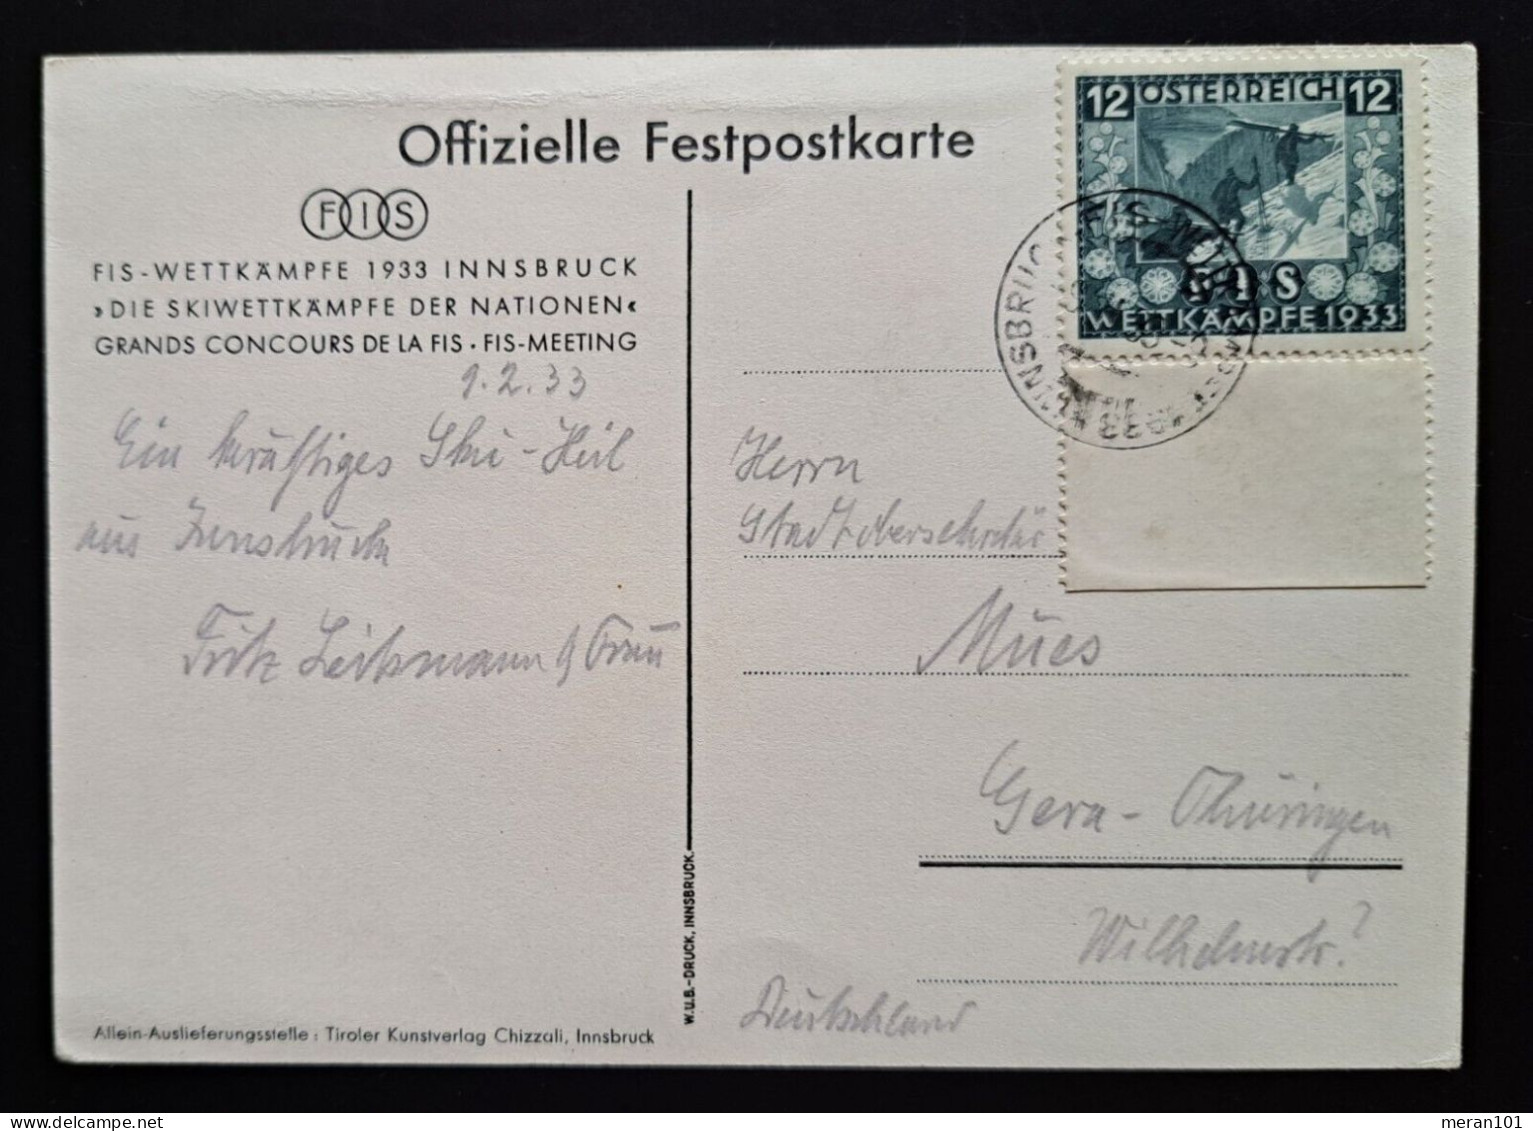 Österreich, Festpostkarte FIS- WETTKÄMPFE 1933 Mi 551 - Storia Postale